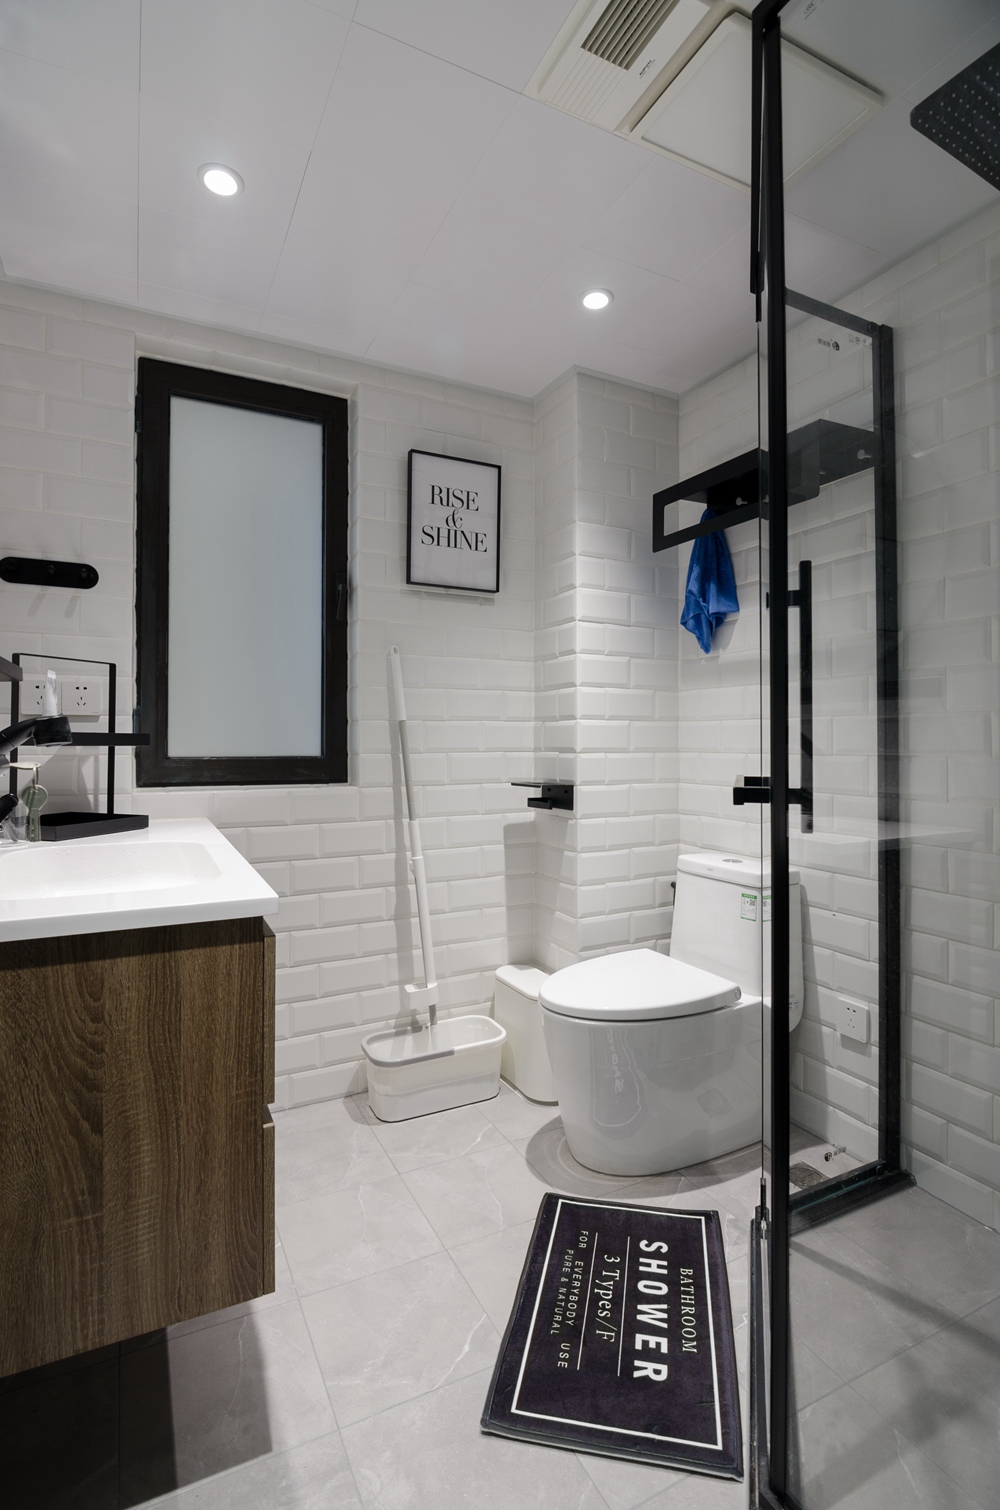 卫生间选用了大面积的白色调，整体追求干净纯粹的简约风格，动线巧妙。